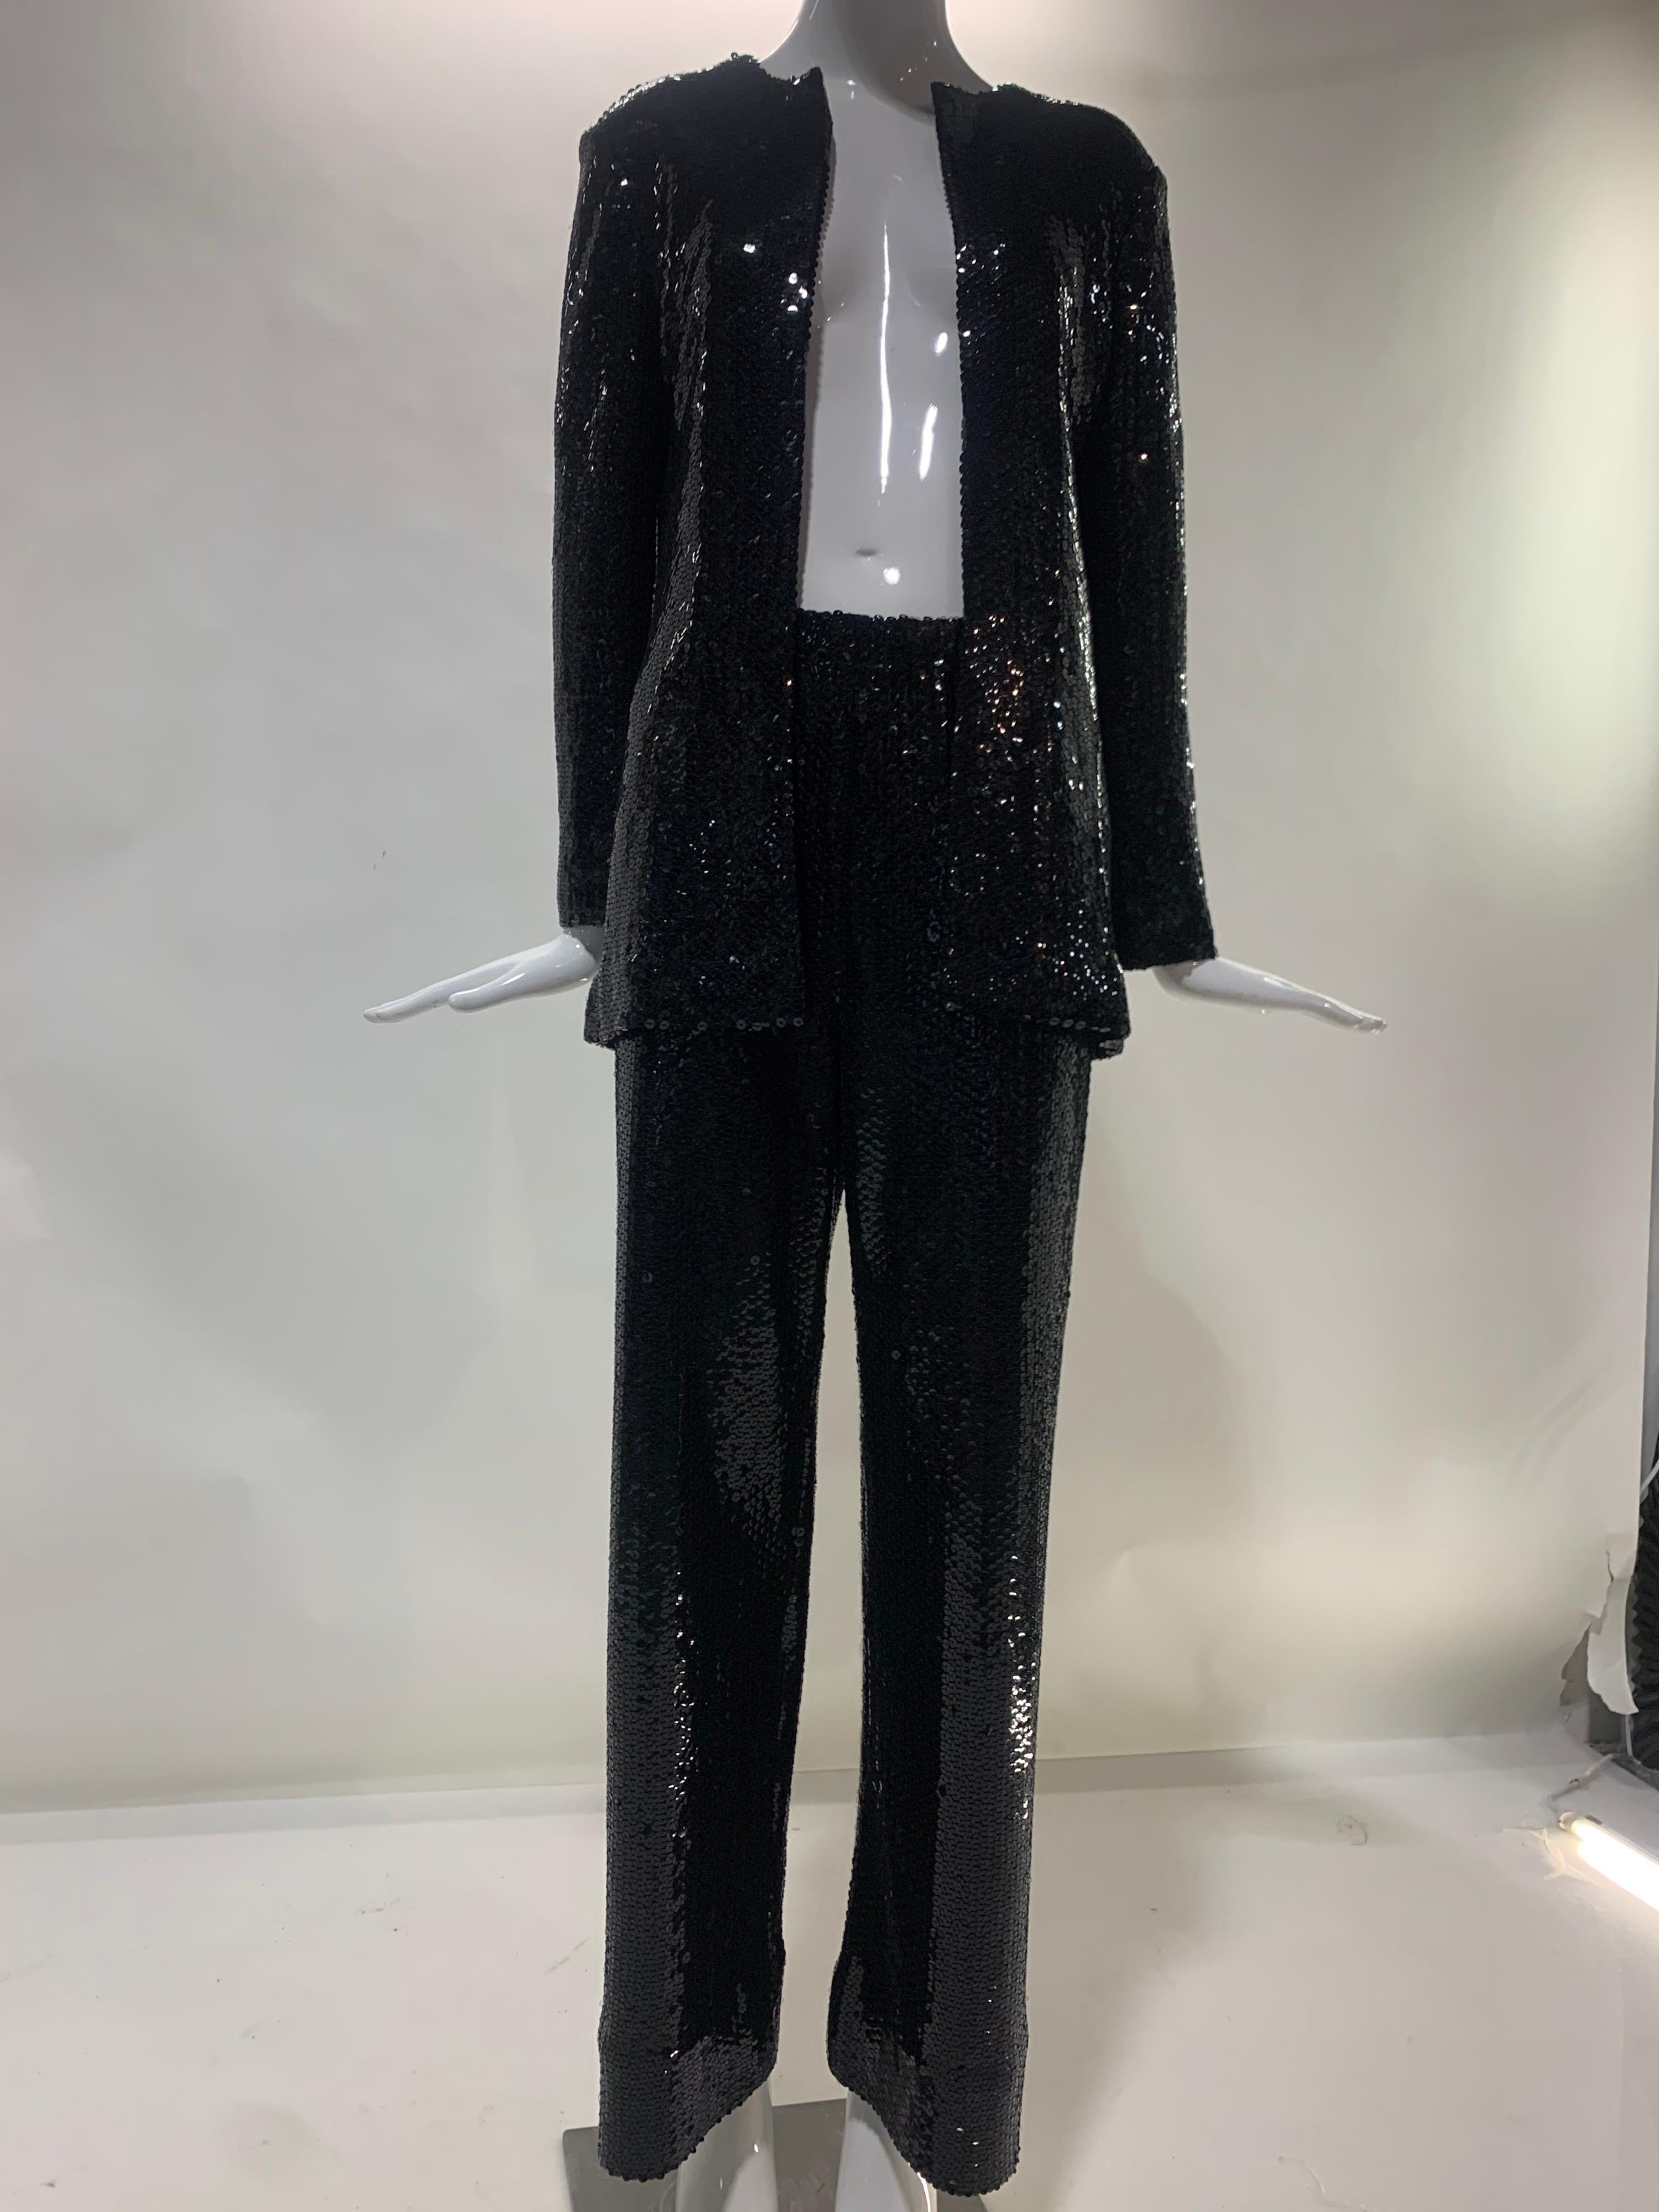 Ein fabelhafter schwarzer Halston Hosenanzug mit Pailletten aus den 1970er Jahren auf mattem Jersey. Dieser klassische Halston-Look machte Liza Minnelli berühmt!  Mach deinen Glam an!  Neu, nie getragen. Größe 8. 